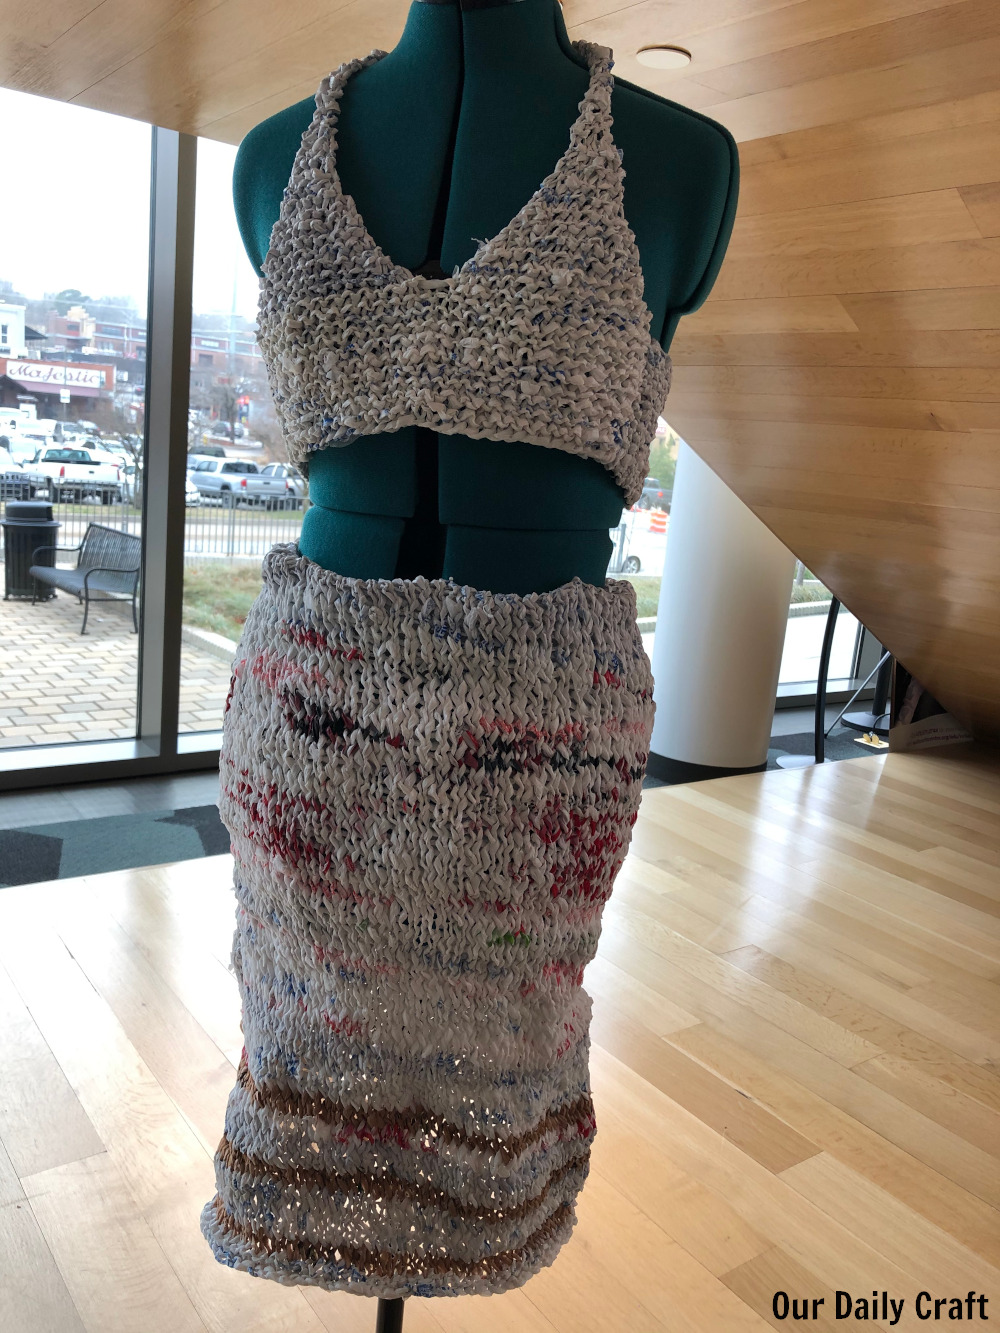 Why I Knit a Plastic Dress